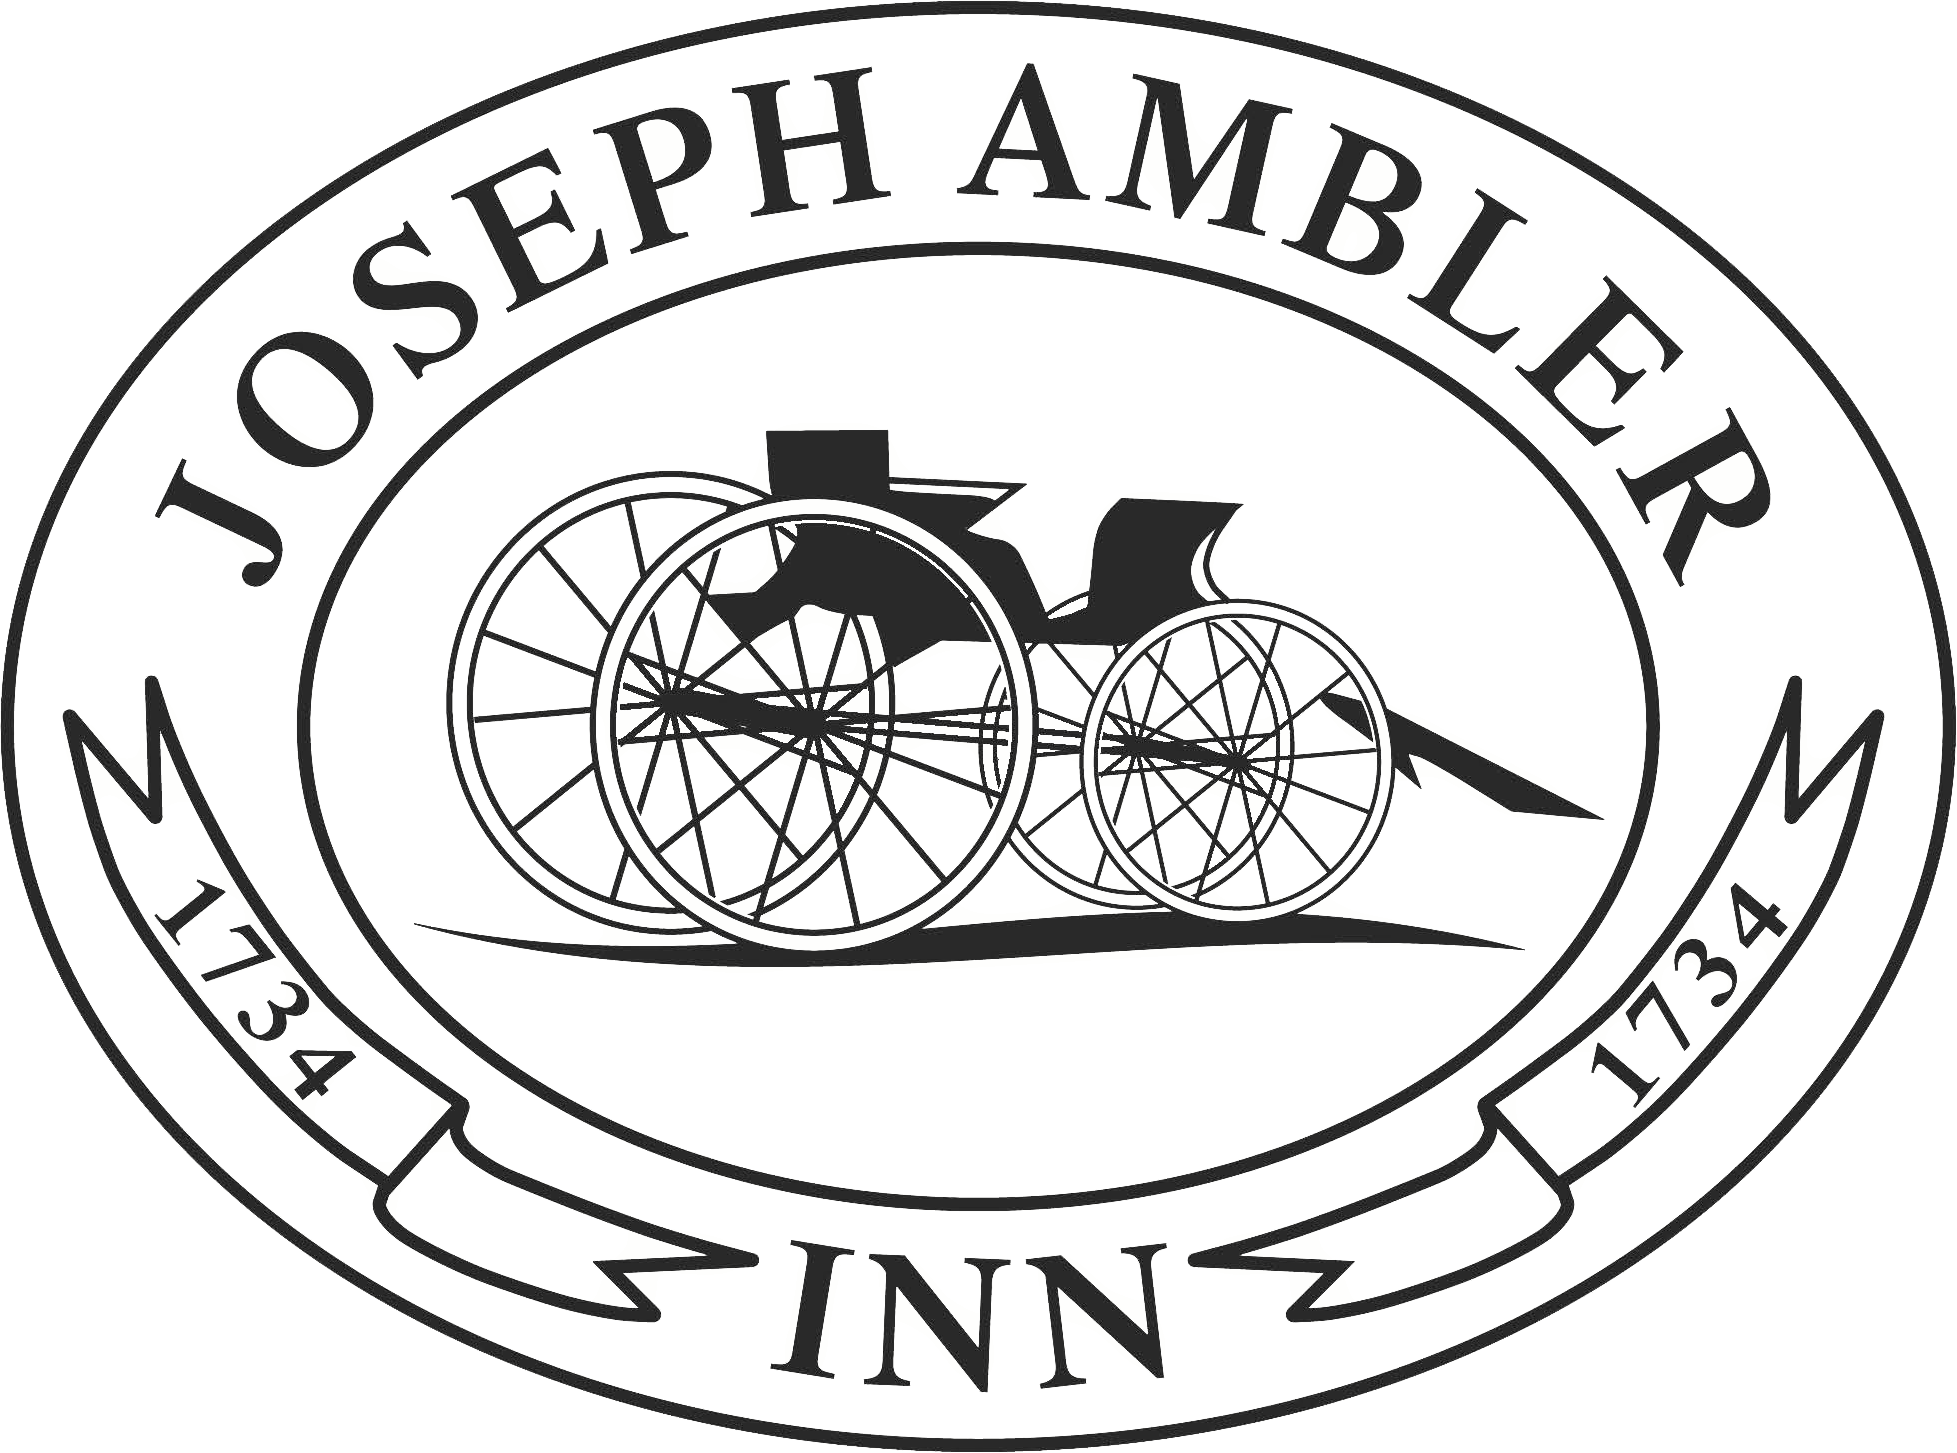 Joseph Ambler Inn - Greater Philadelphia Area, PA